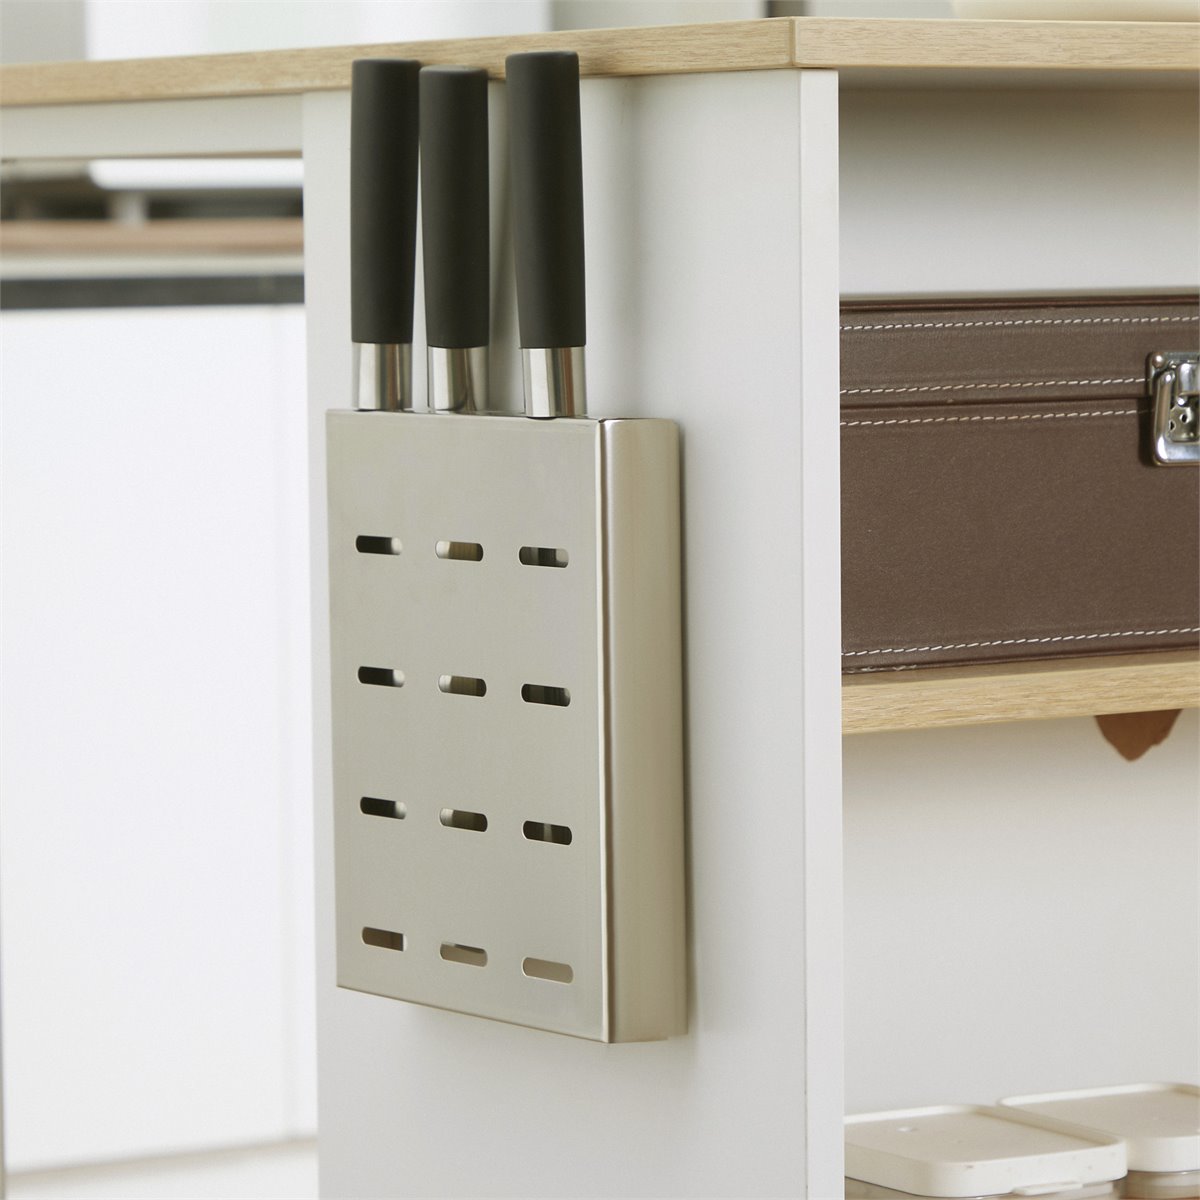 Conforama y la solución ideal para ampliar el espacio de cocinas pequeñas:  el mueble auxiliar que